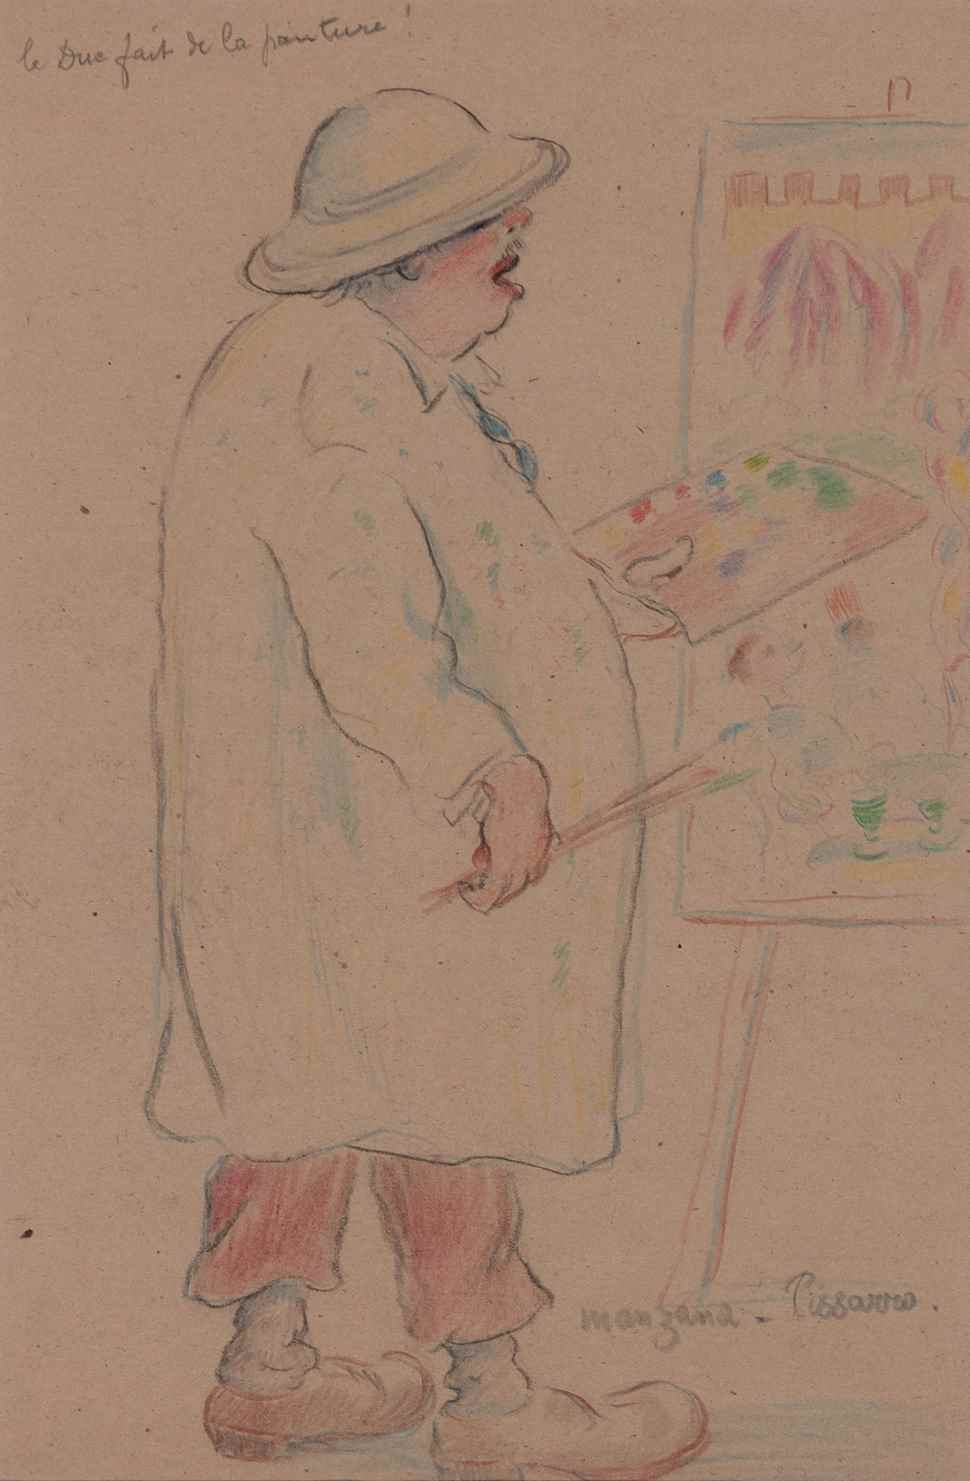 Le Due Fait de la Peinture - Georges Manzana Pissarro (1871 - 1961)